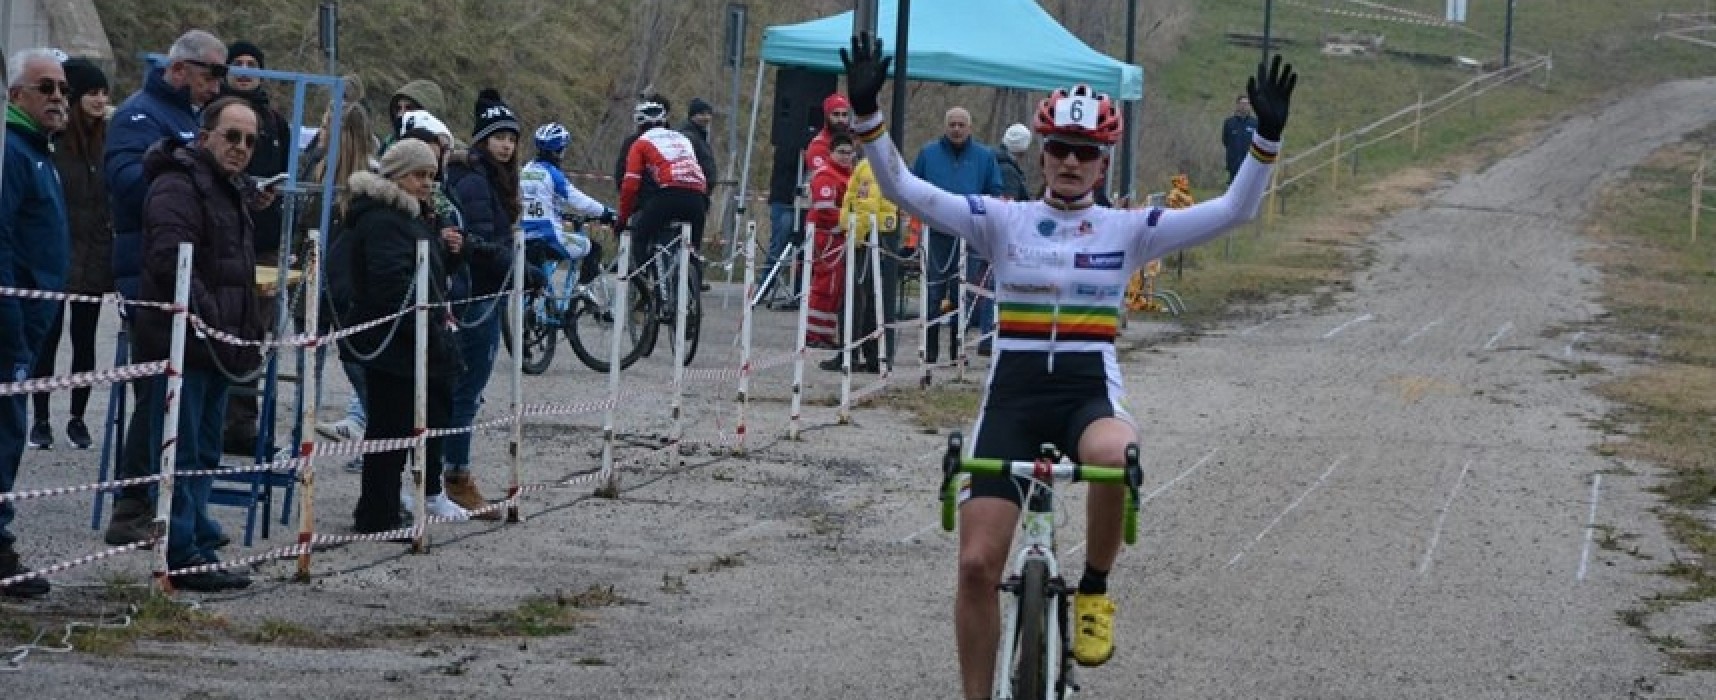 Gaetano Cavallaro, ottimi risultati al 2° Trofeo Protek in vista dei Campionati Italiani / FOTO